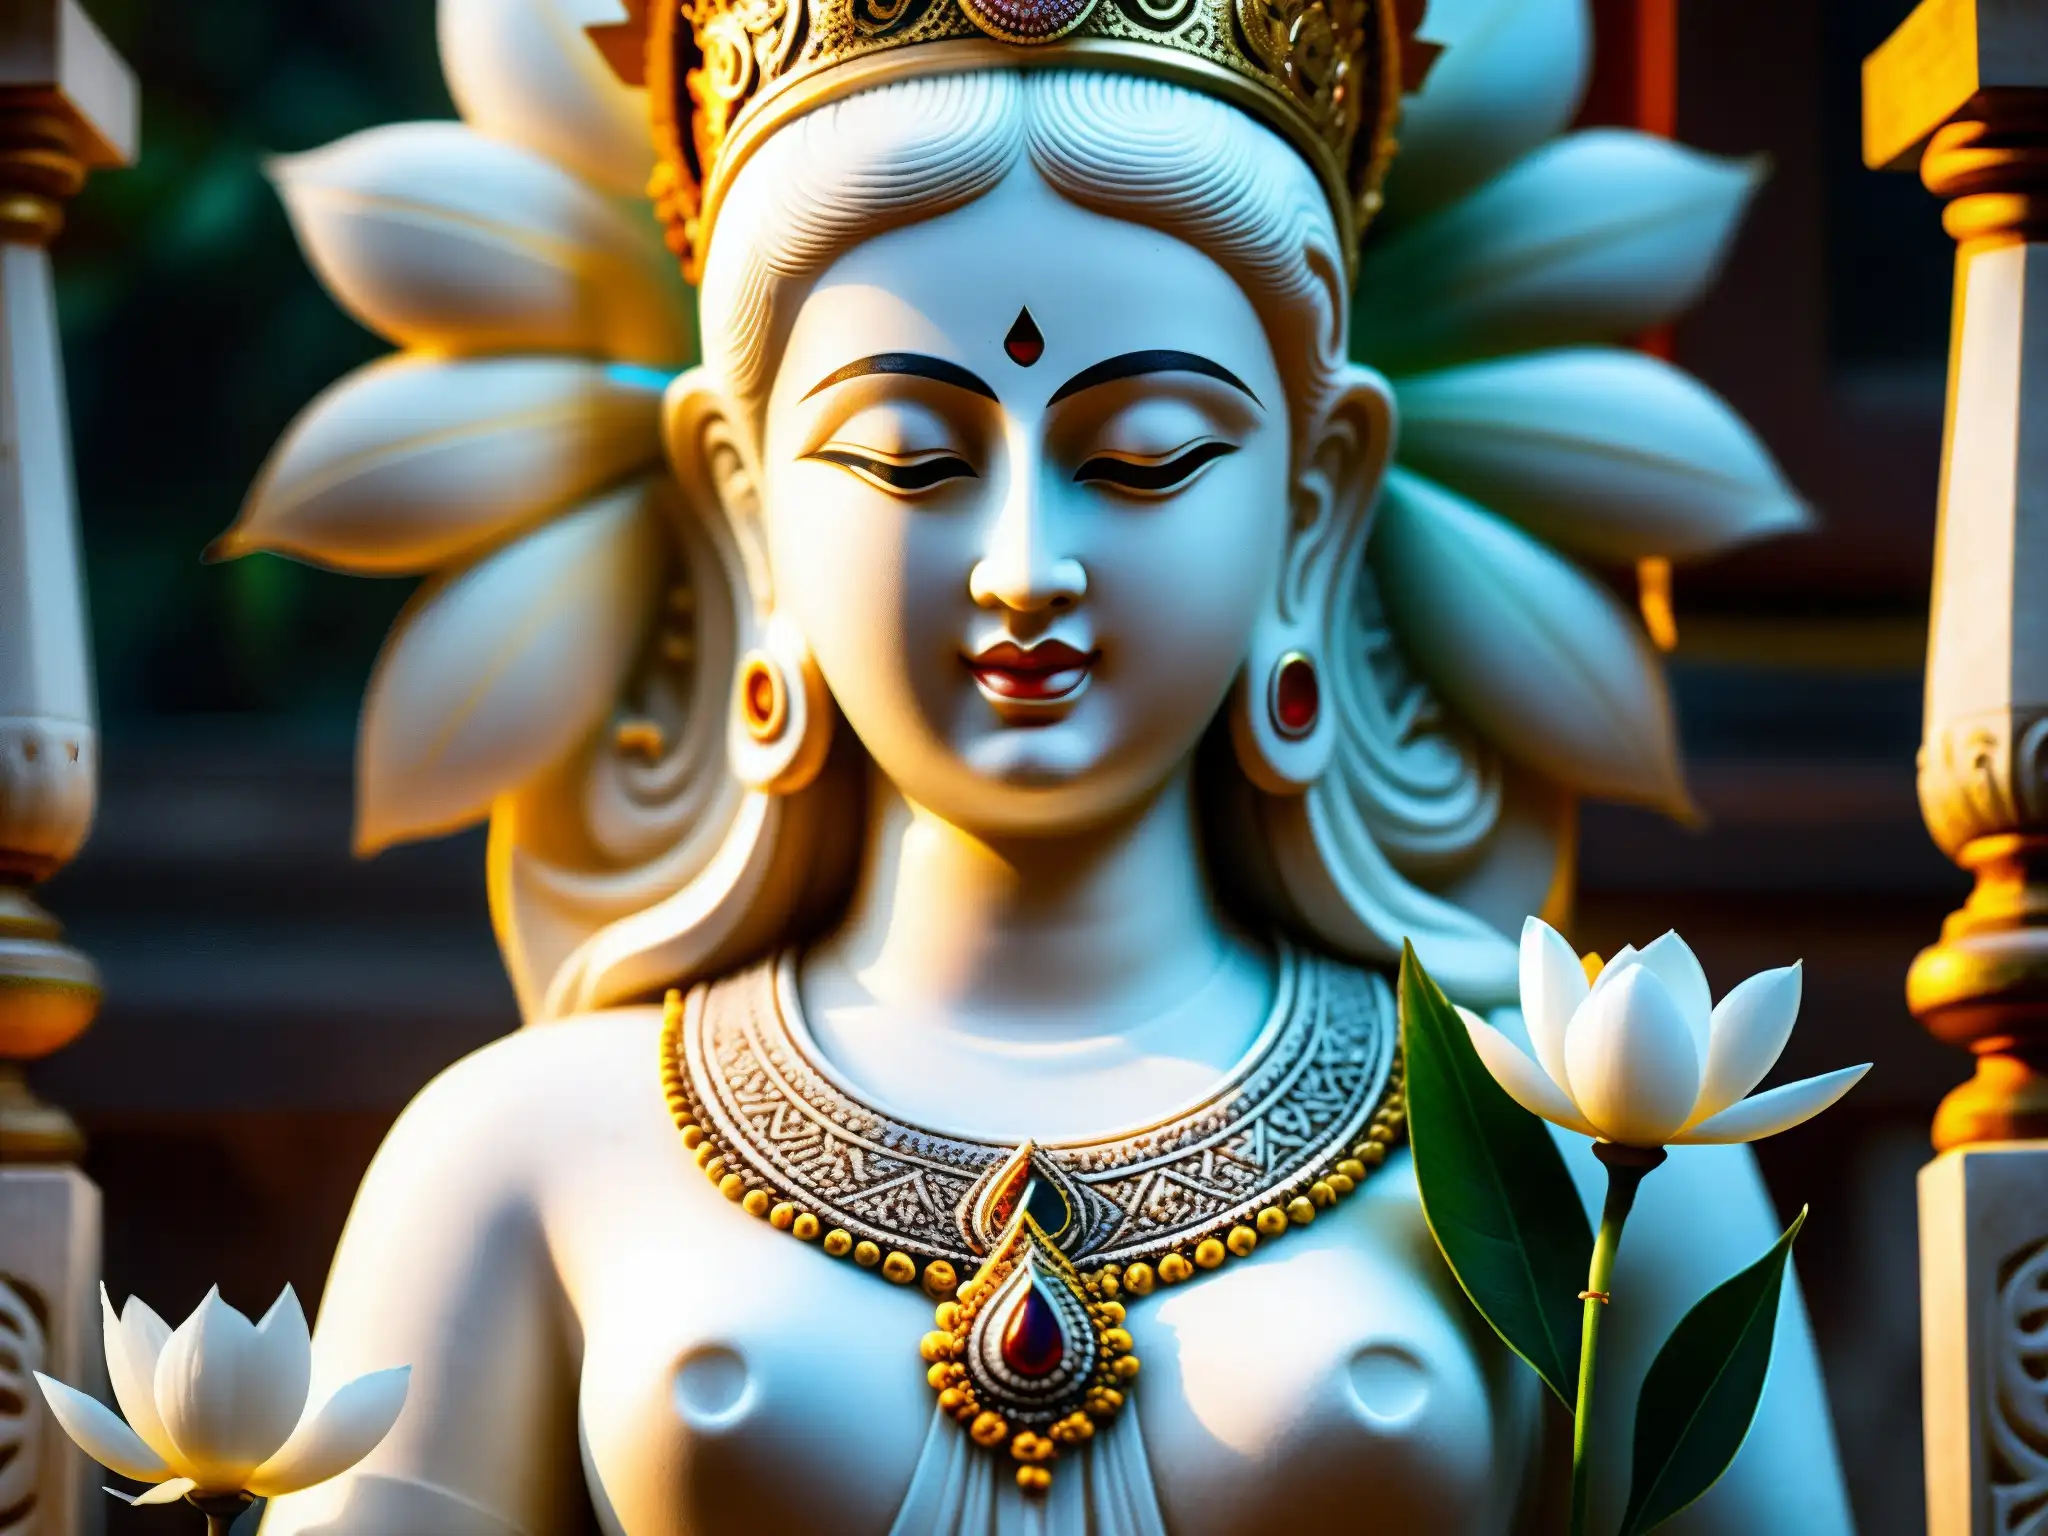 Una estatua de mármol blanco de una diosa en un antiguo templo de Sri Lanka, evocando misticismo y serenidad